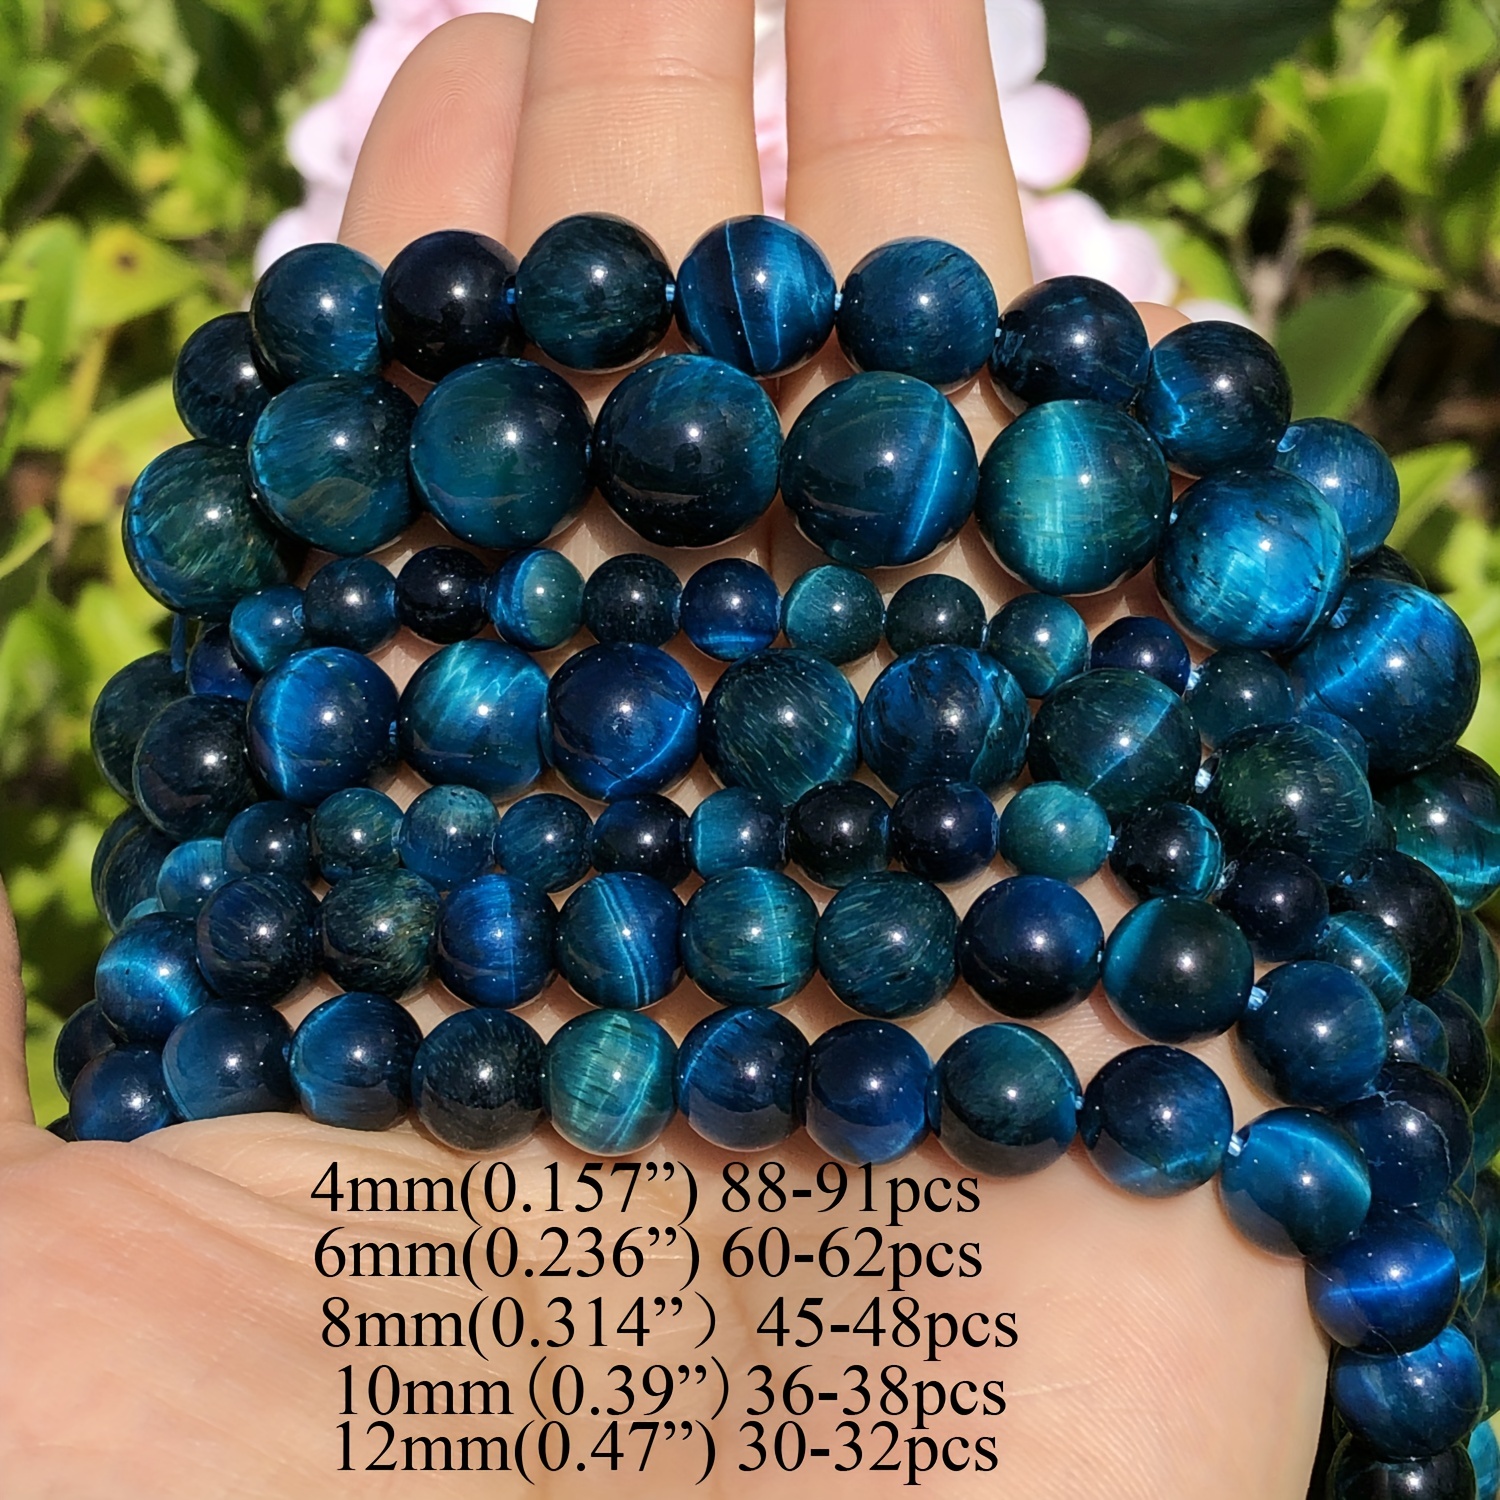 6mm Green Tiger Eye Beads 60 Natural Stone Loose Beads Diy - Temu